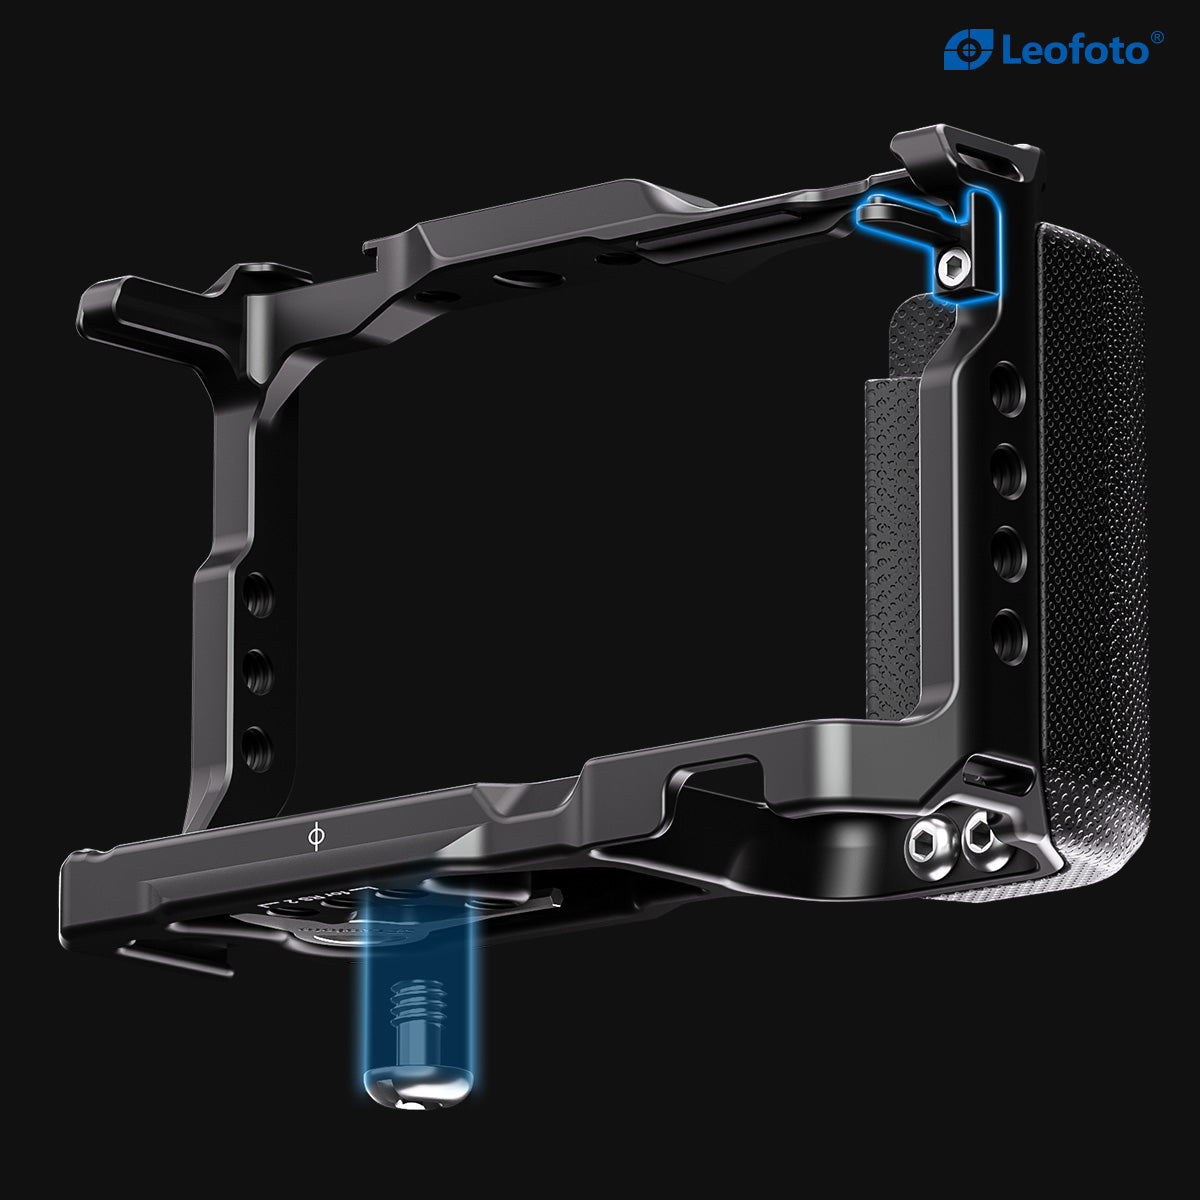 Leofoto ZV-E10 Custom Cage for Sony ZV-E10 Camera